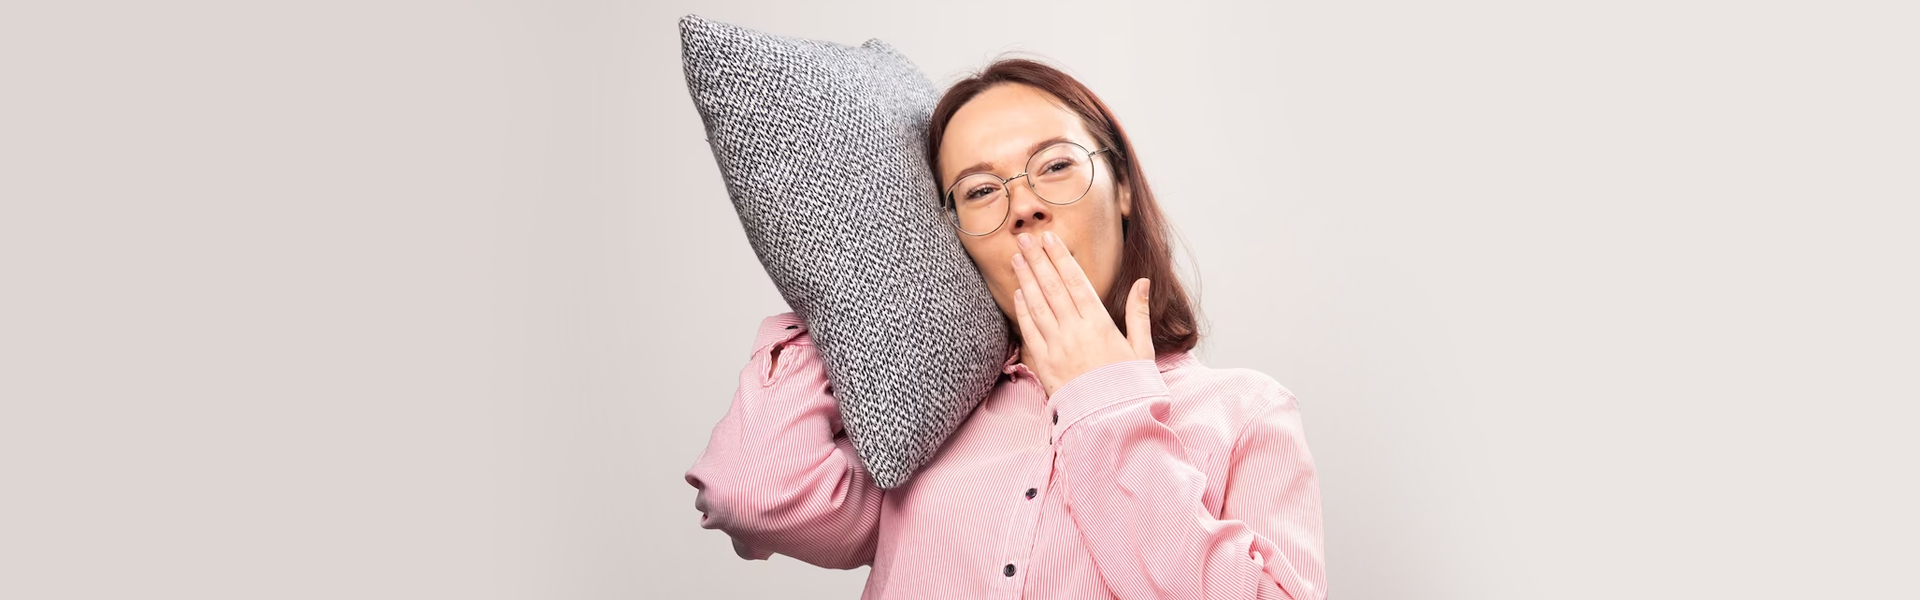 Dental appliances for sleep apnea: Do they work?